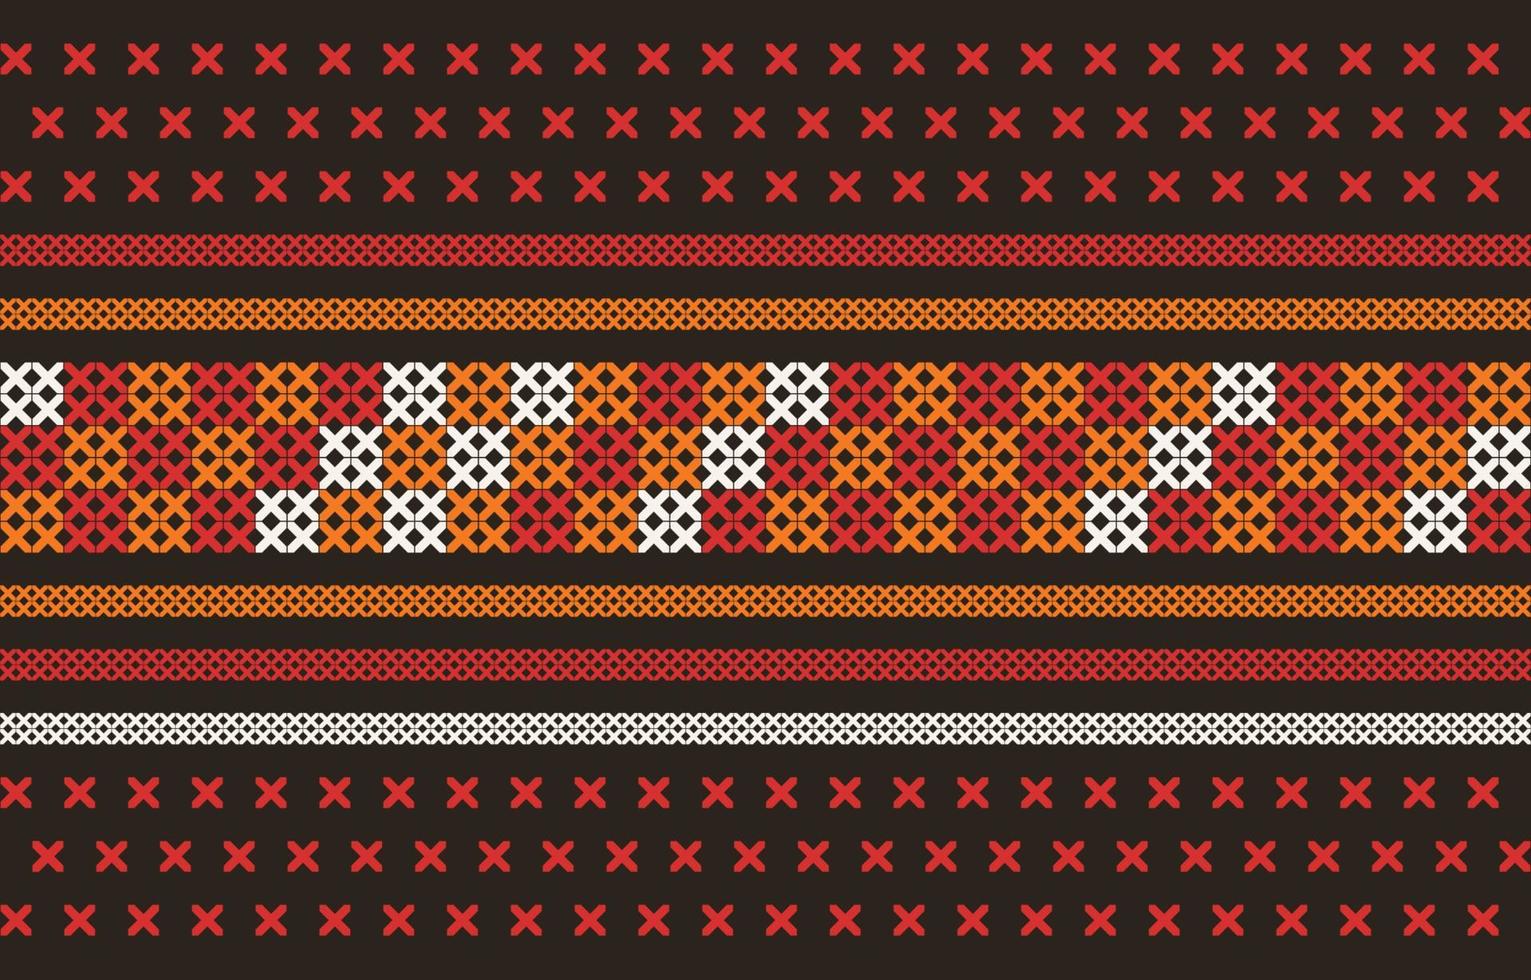 abstrakt sömlös etnisk akha broderad tyg mönster design för textil, kläder, bakgrund mönster, textur och möbel prydnad skriva ut för matta, tapet, textil- dekoration. geometrisk konst. vektor